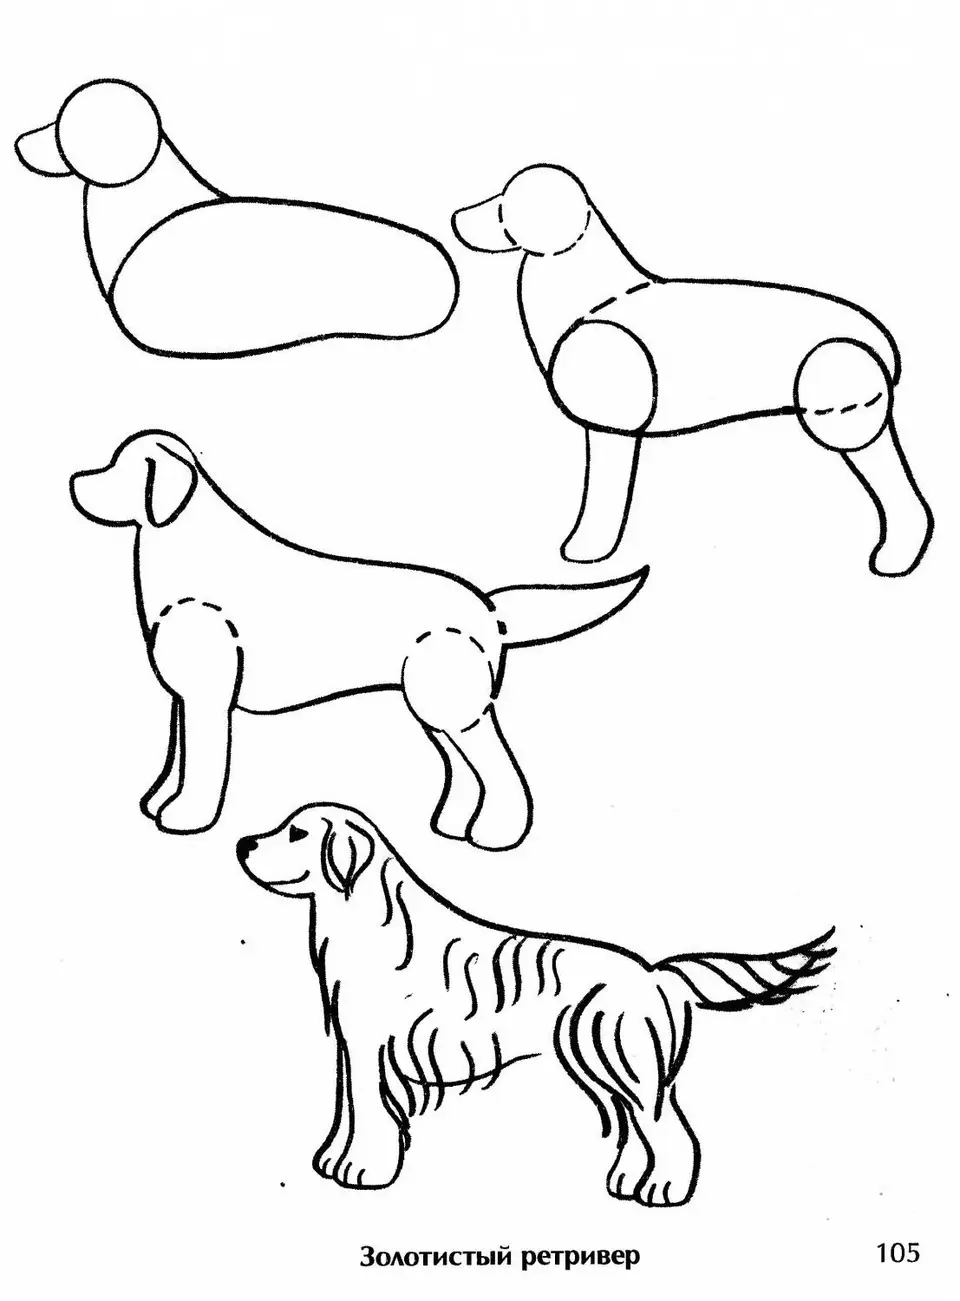 Собака рисунок для детей карандашом